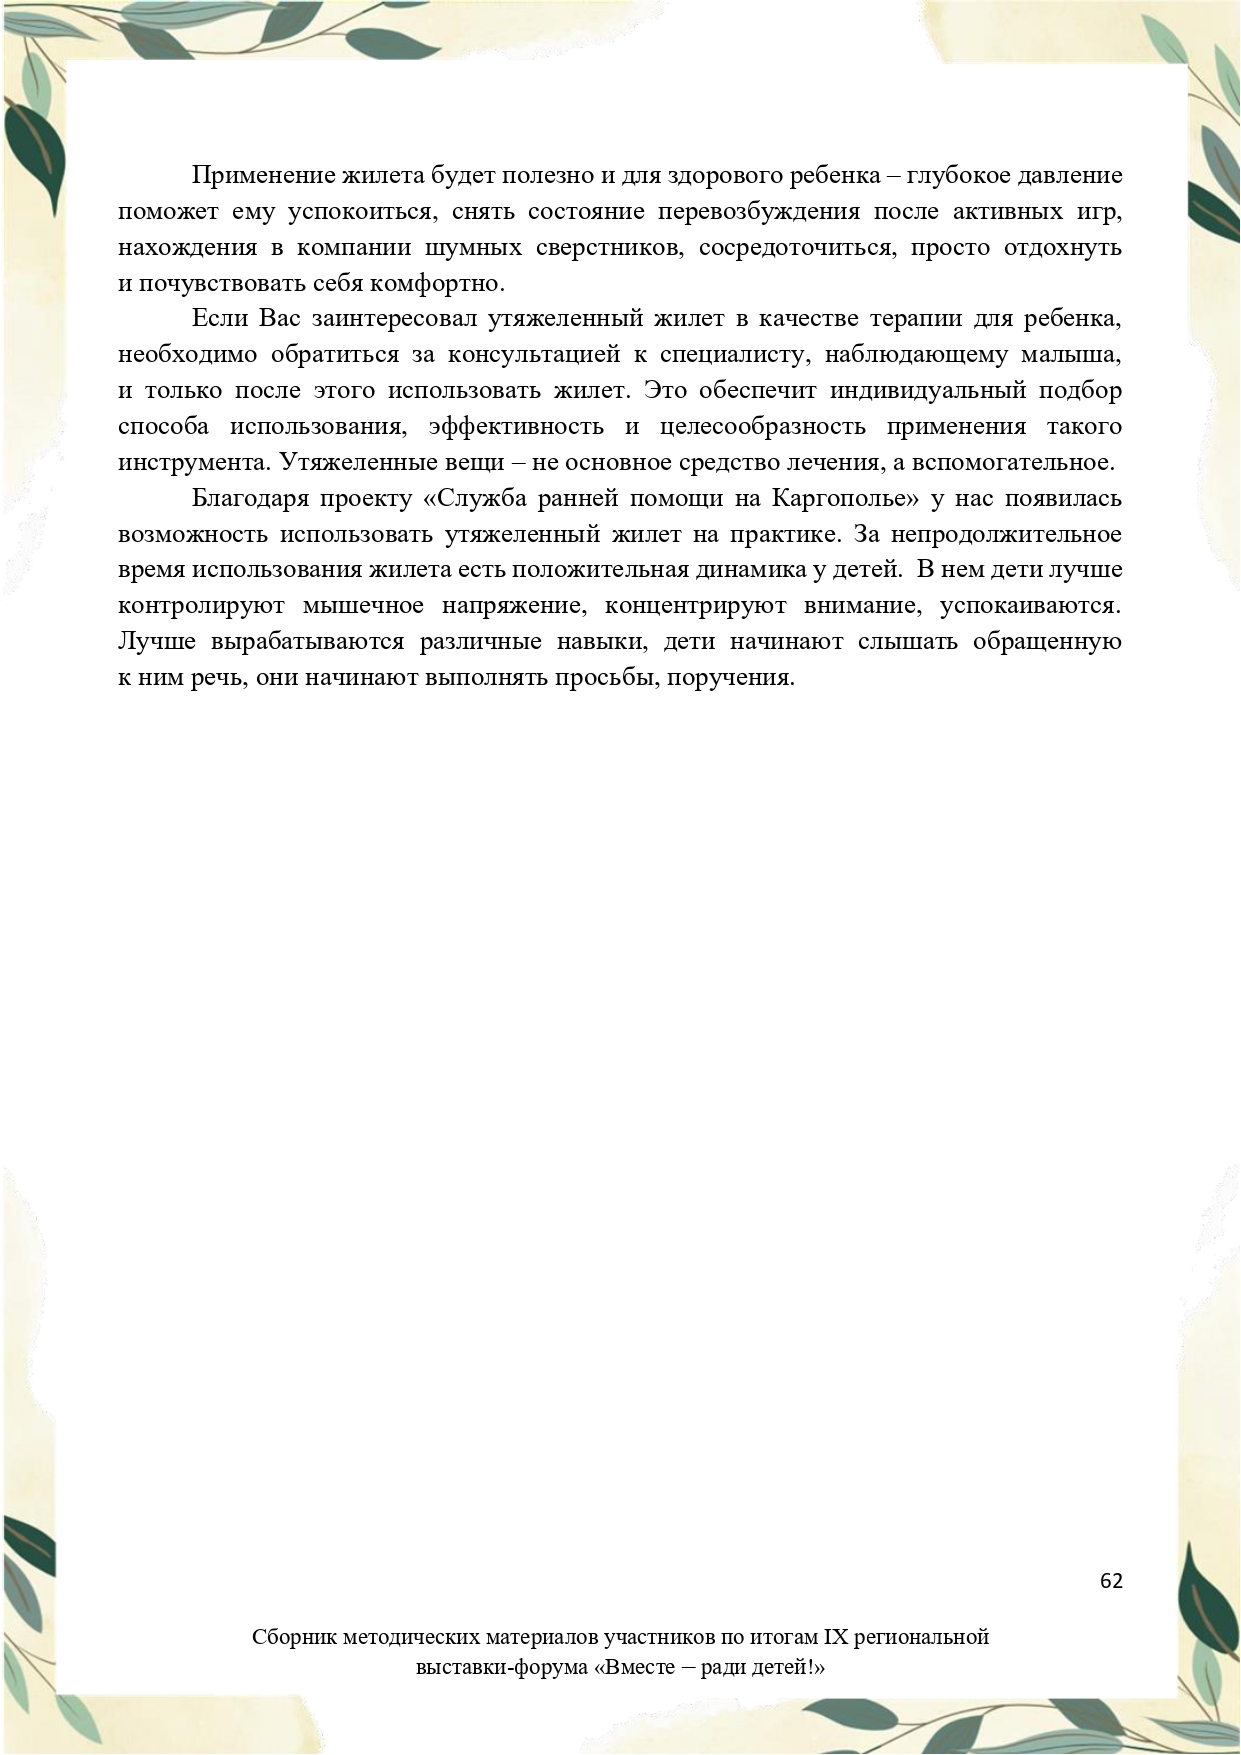 Sbornik_metodicheskikh_materialov_uchastnikov_IX_regionalnoy_vystavki-foruma_Vmeste__radi_detey_33__2023_page-0062